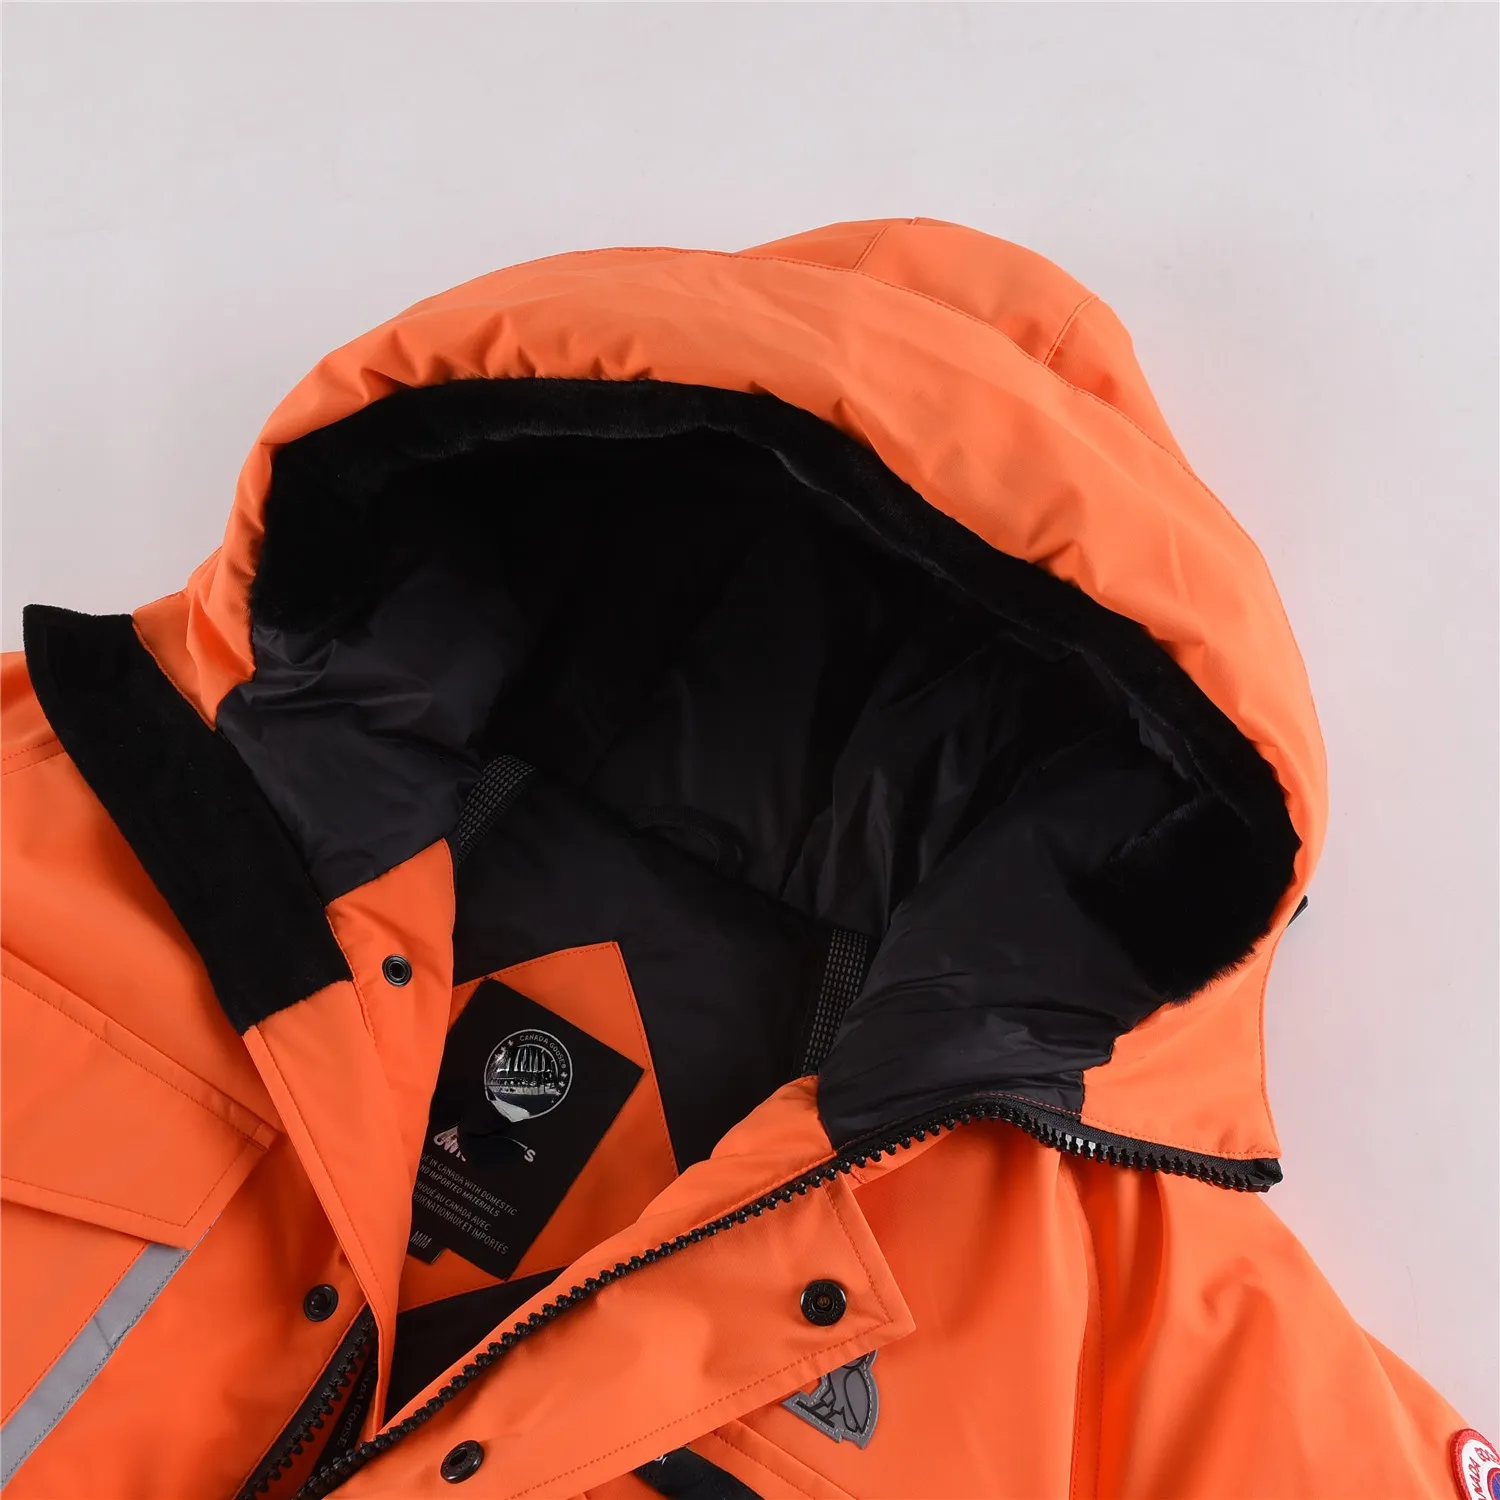 الرجال الشتاء الفاخرة أسفل جاكيتات الأزياء طباعة تصميم هوديي معطف دافئ ستر سترة يندبروف Y600A4630